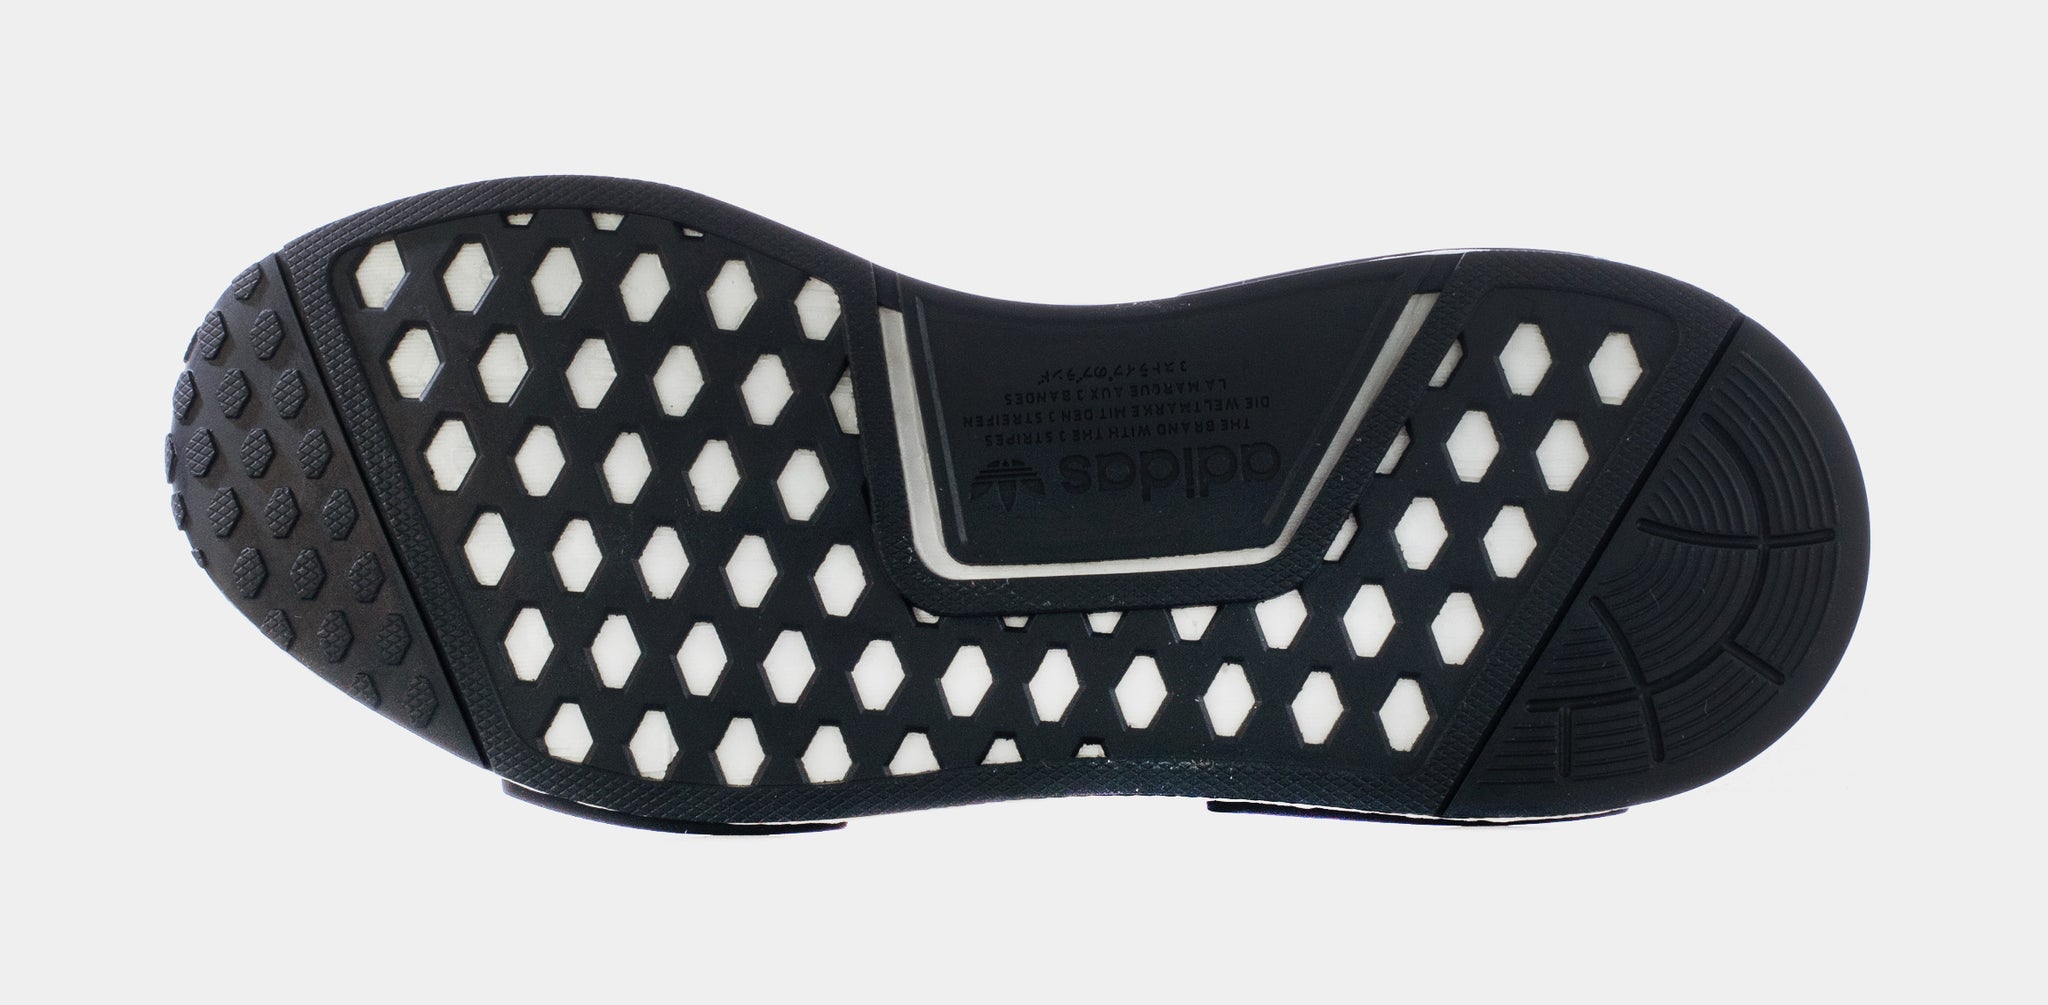 Adidas NMD_R1 Primeblue Black, Low-top Sneakers